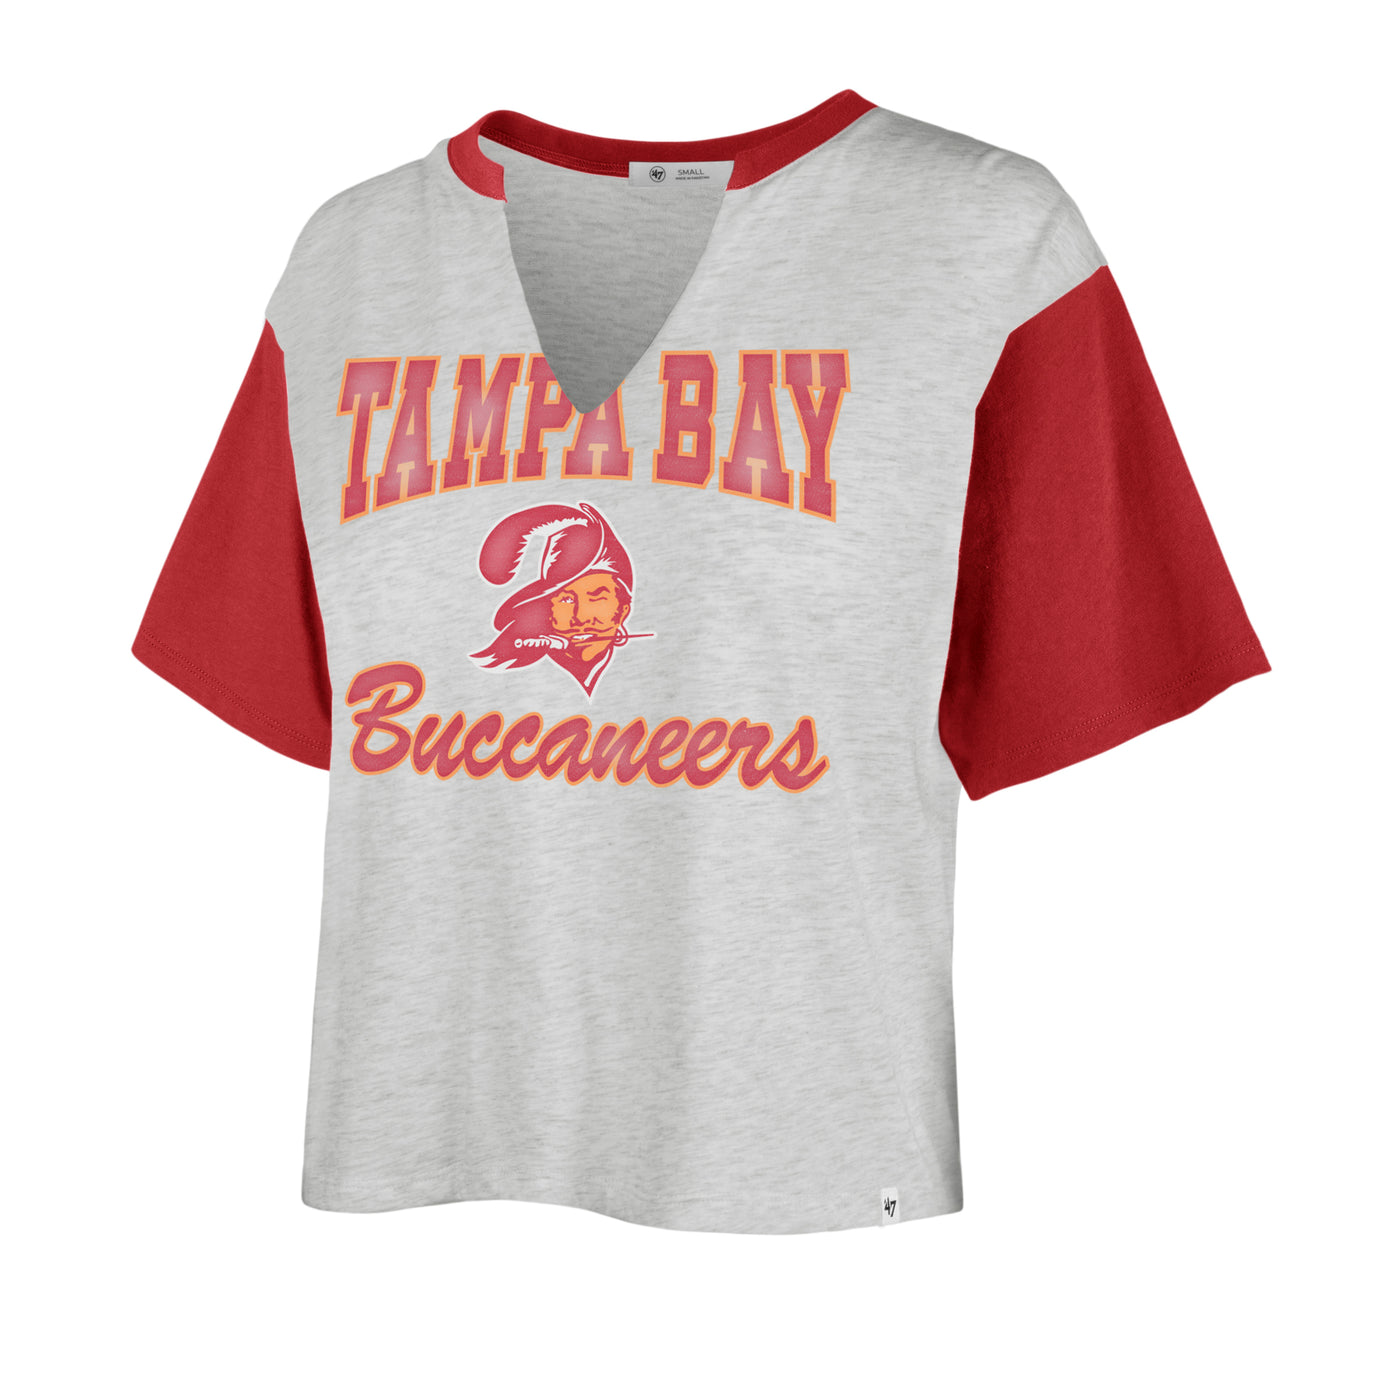 tampa bay buccaneers women's shirt